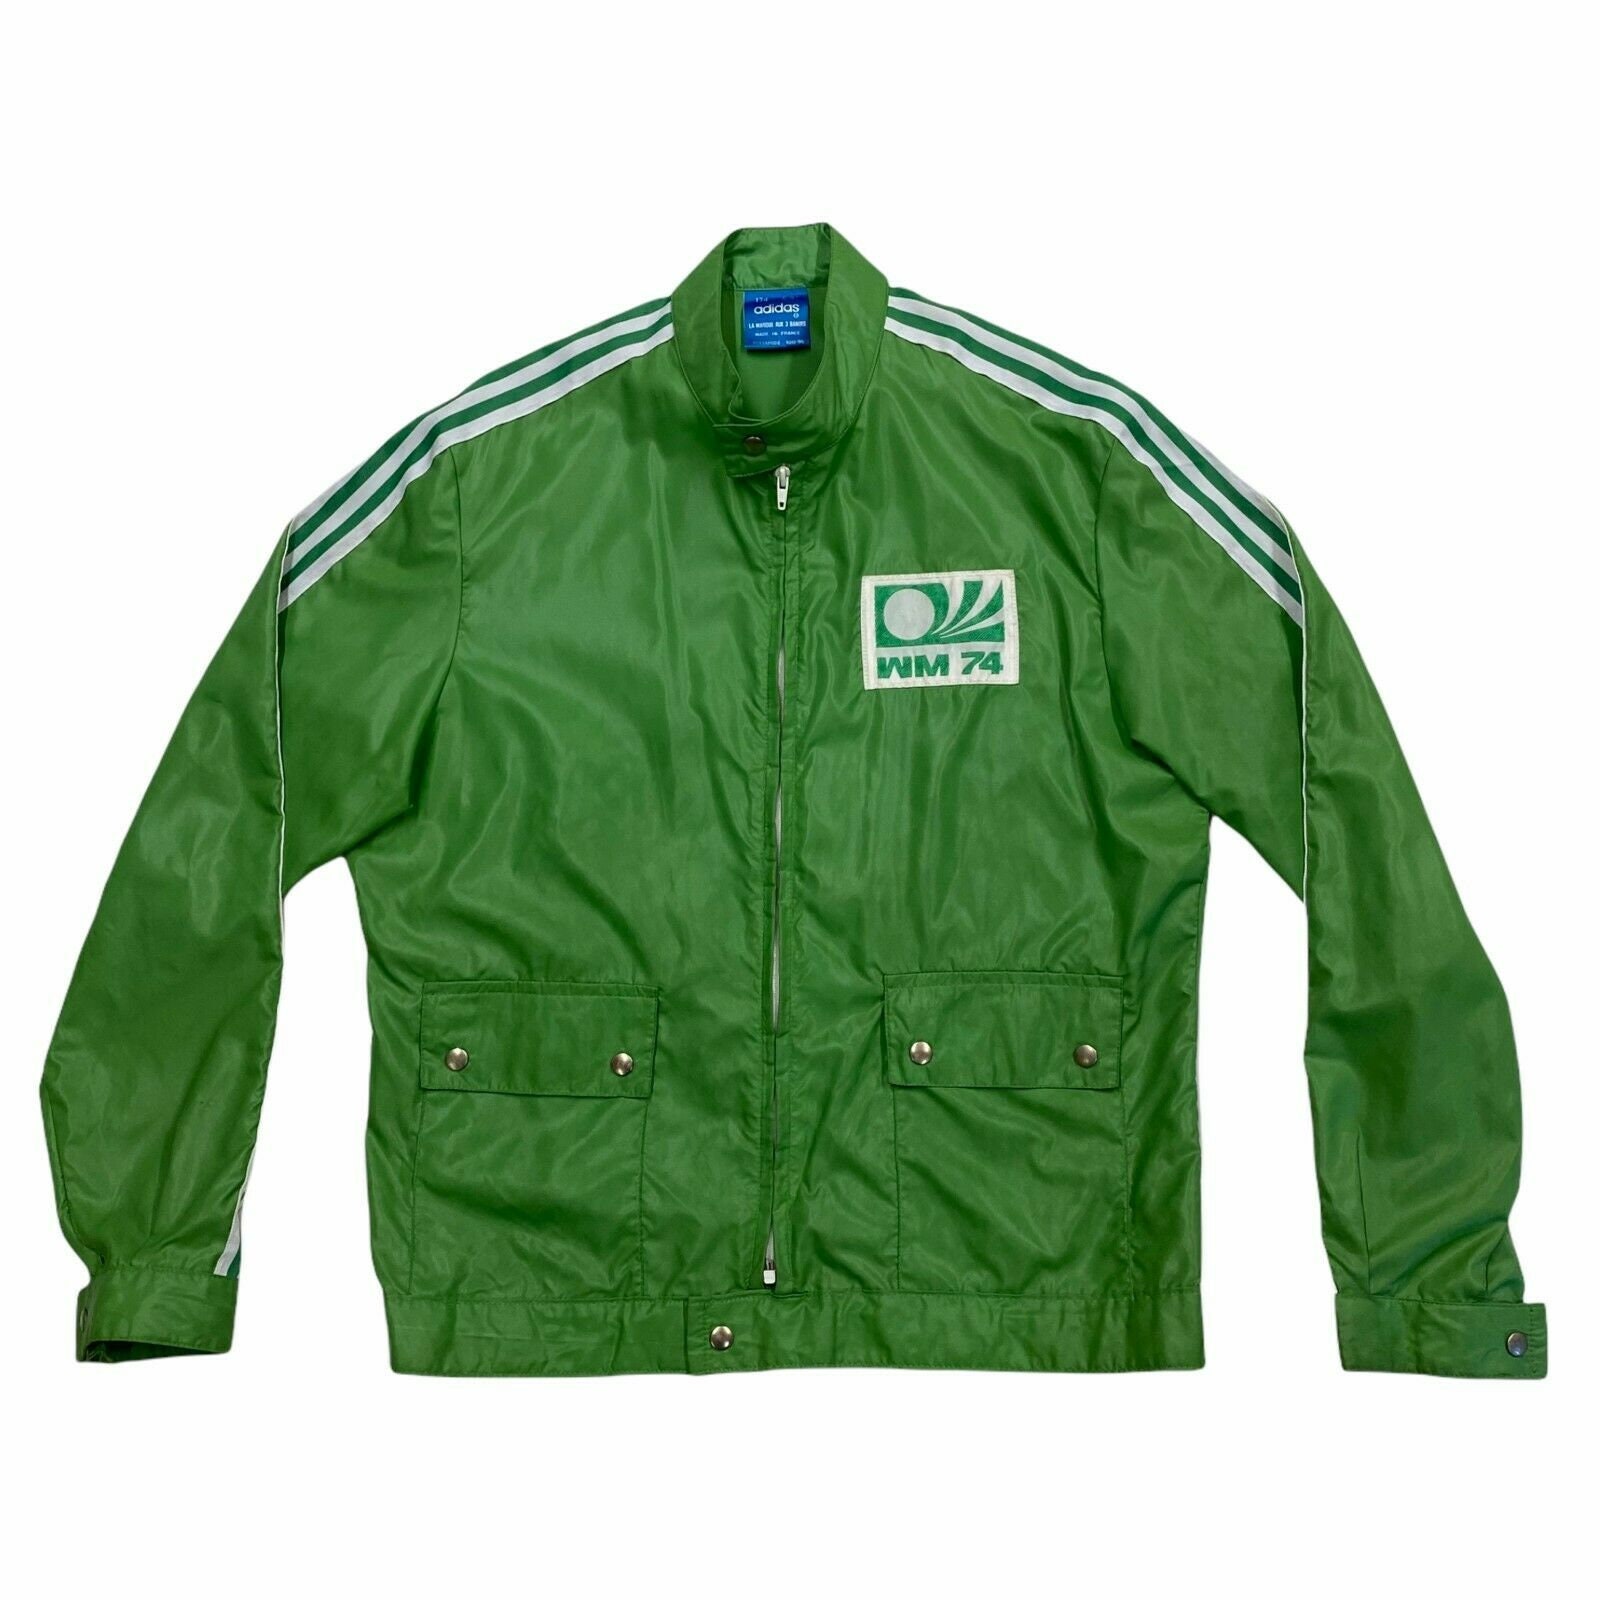 Sucio bulto Preocupado Adidas WM74 World Cup 1974 Jacket Vintage 70s Football - Etsy